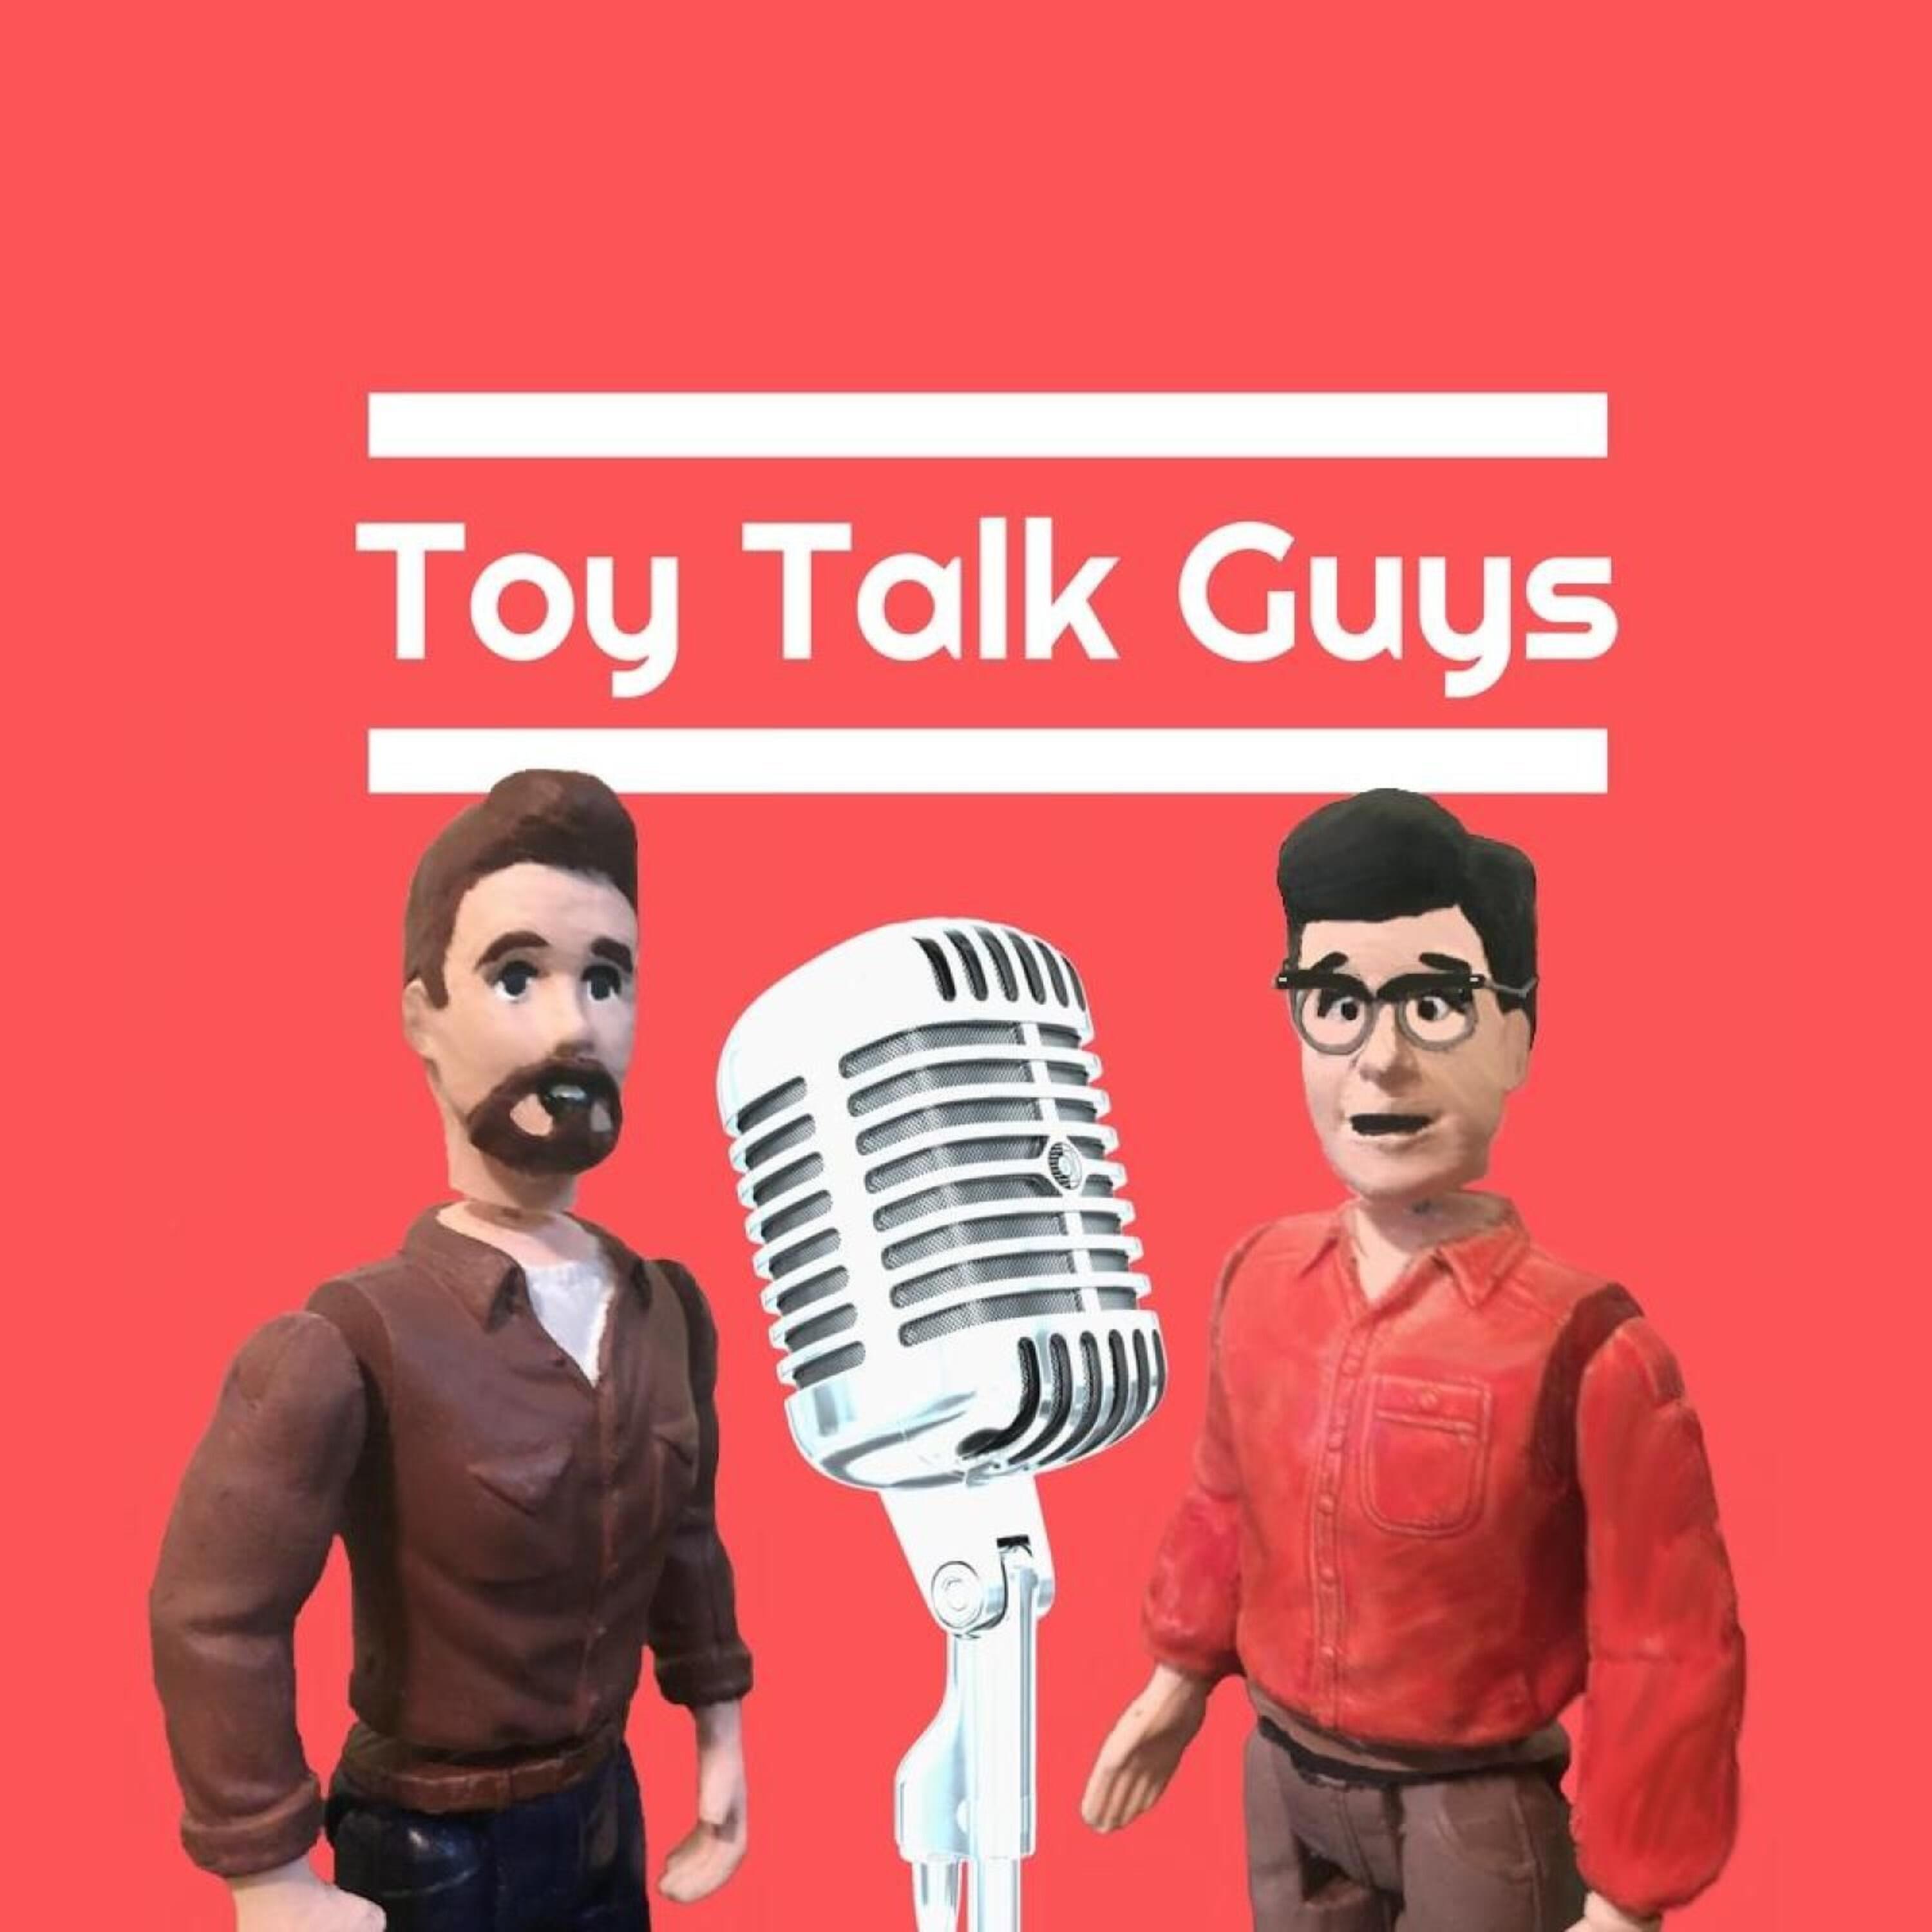 Toy talk. The Toy мероприятия. Toy.